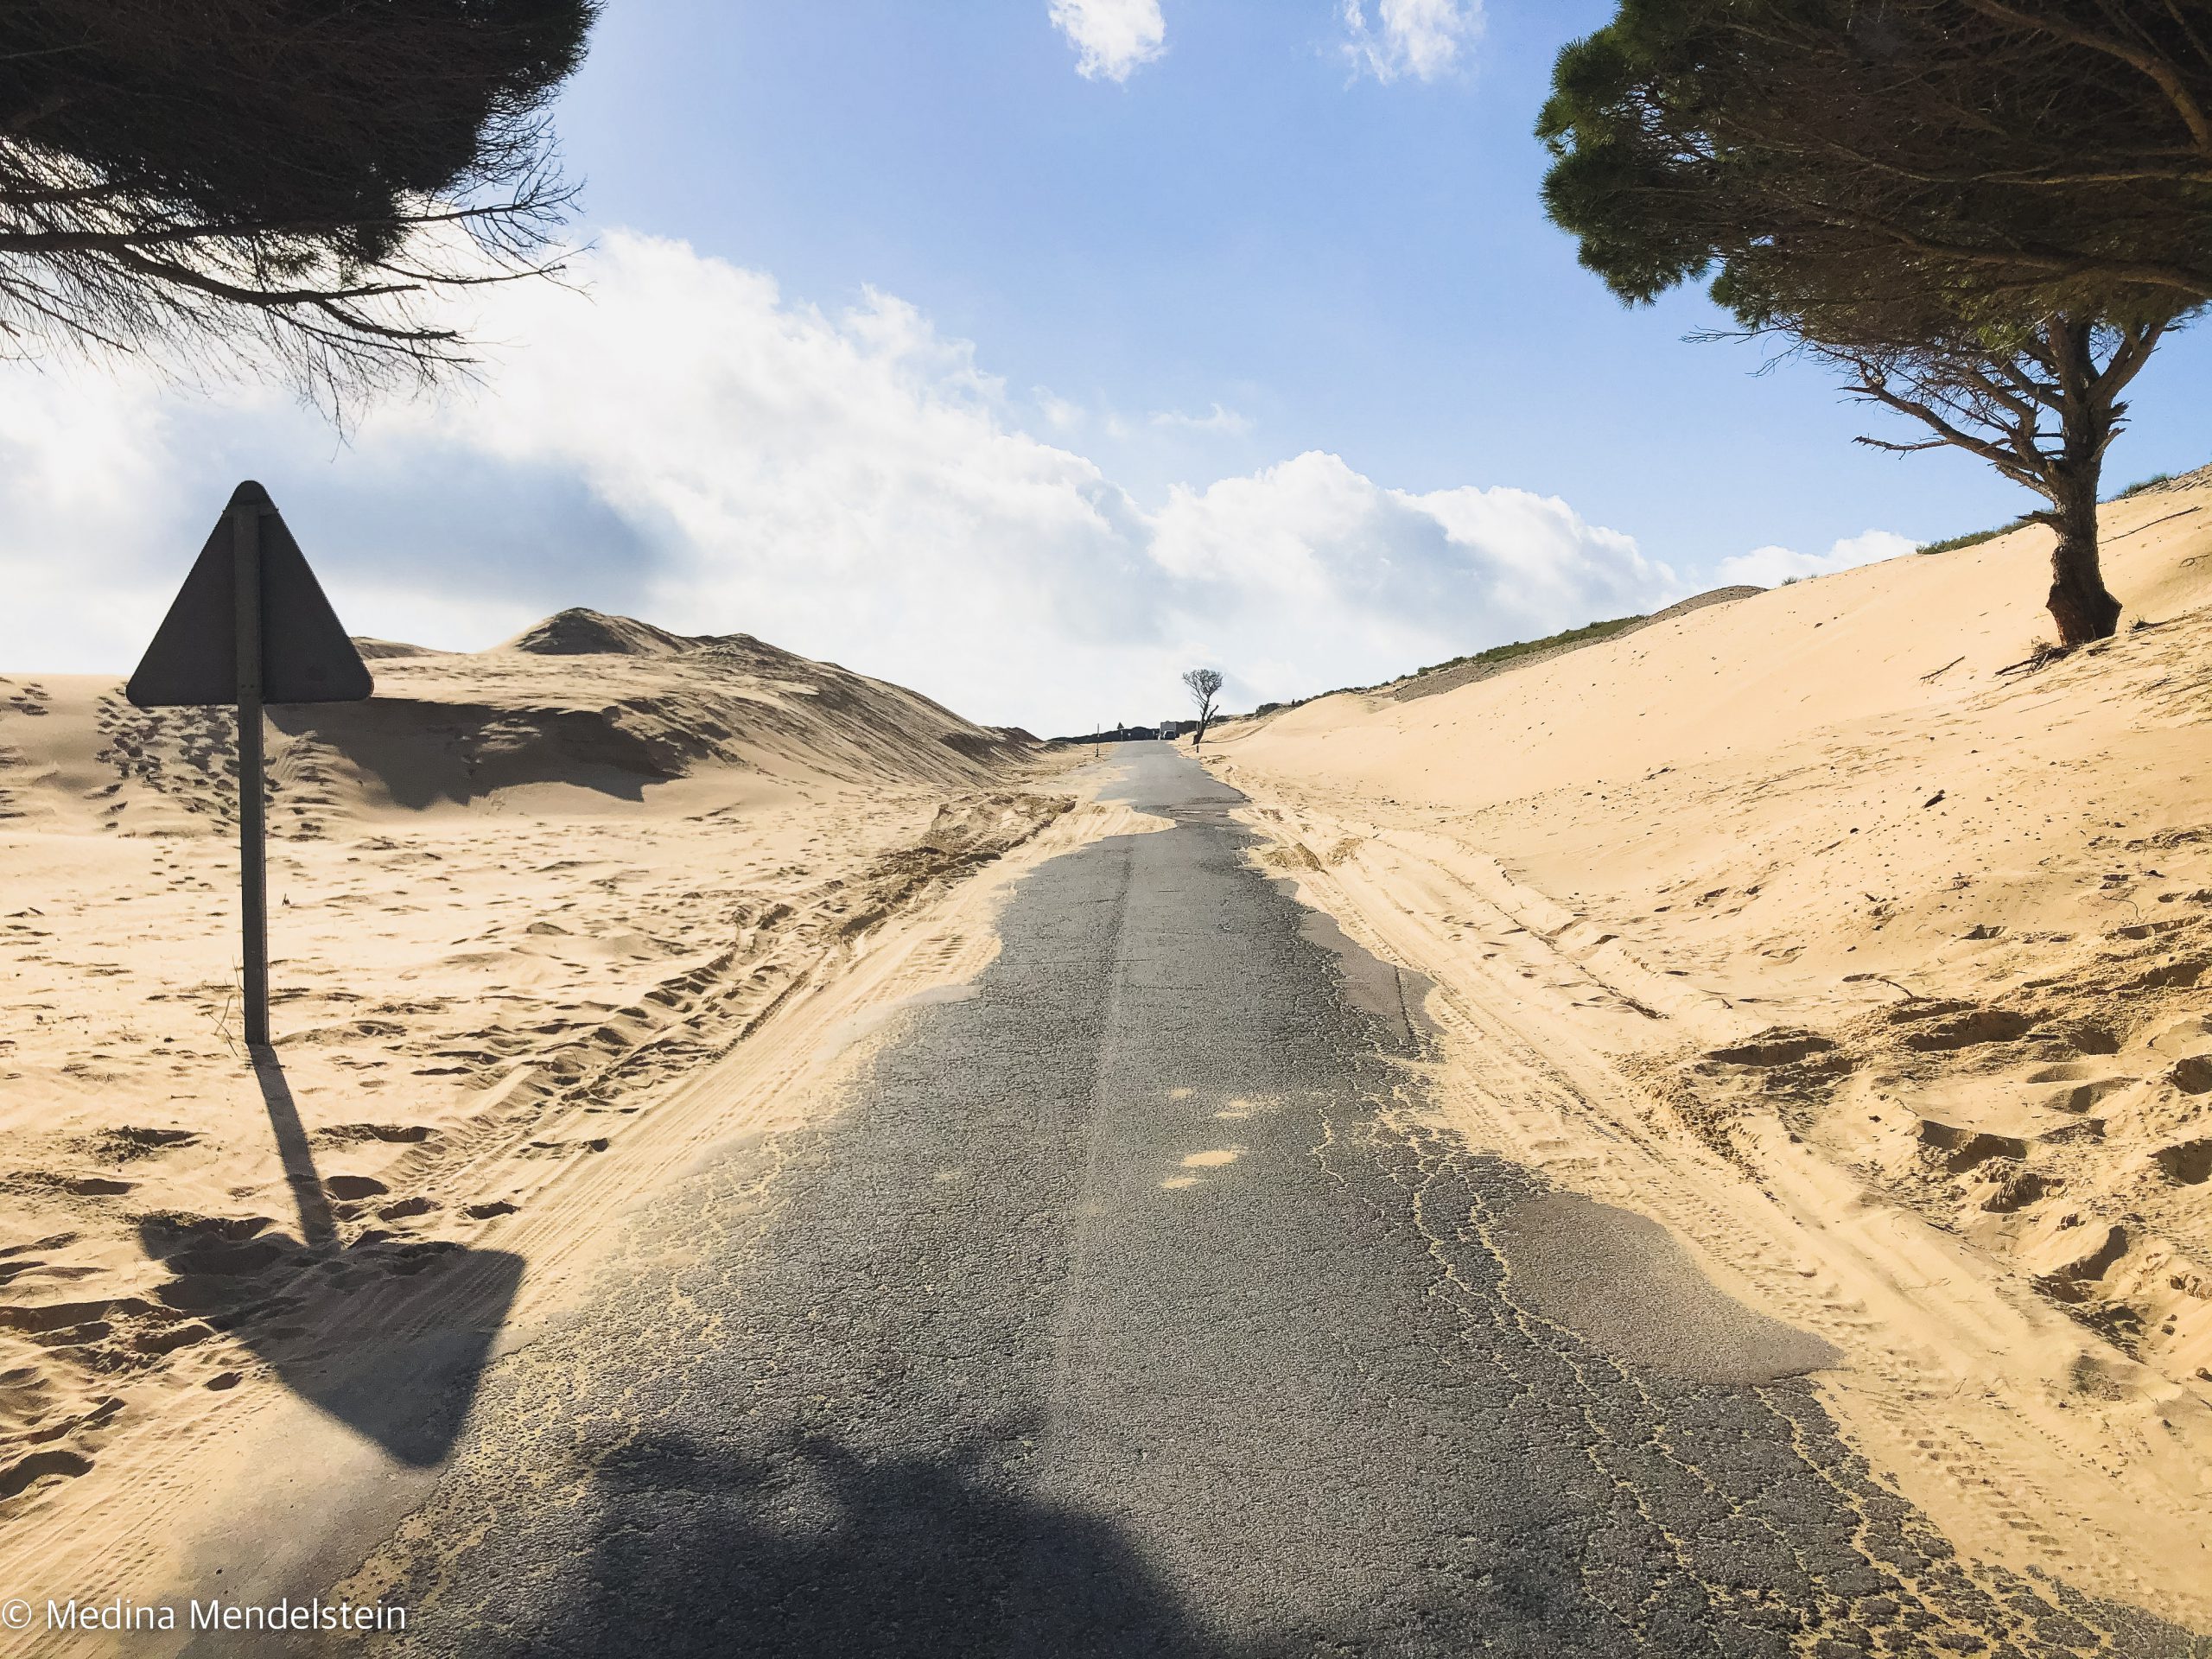 Fotografie aus Marokko, Afrika: Eine Straße, an beiden Seiten der Straße sind Sanddünen.